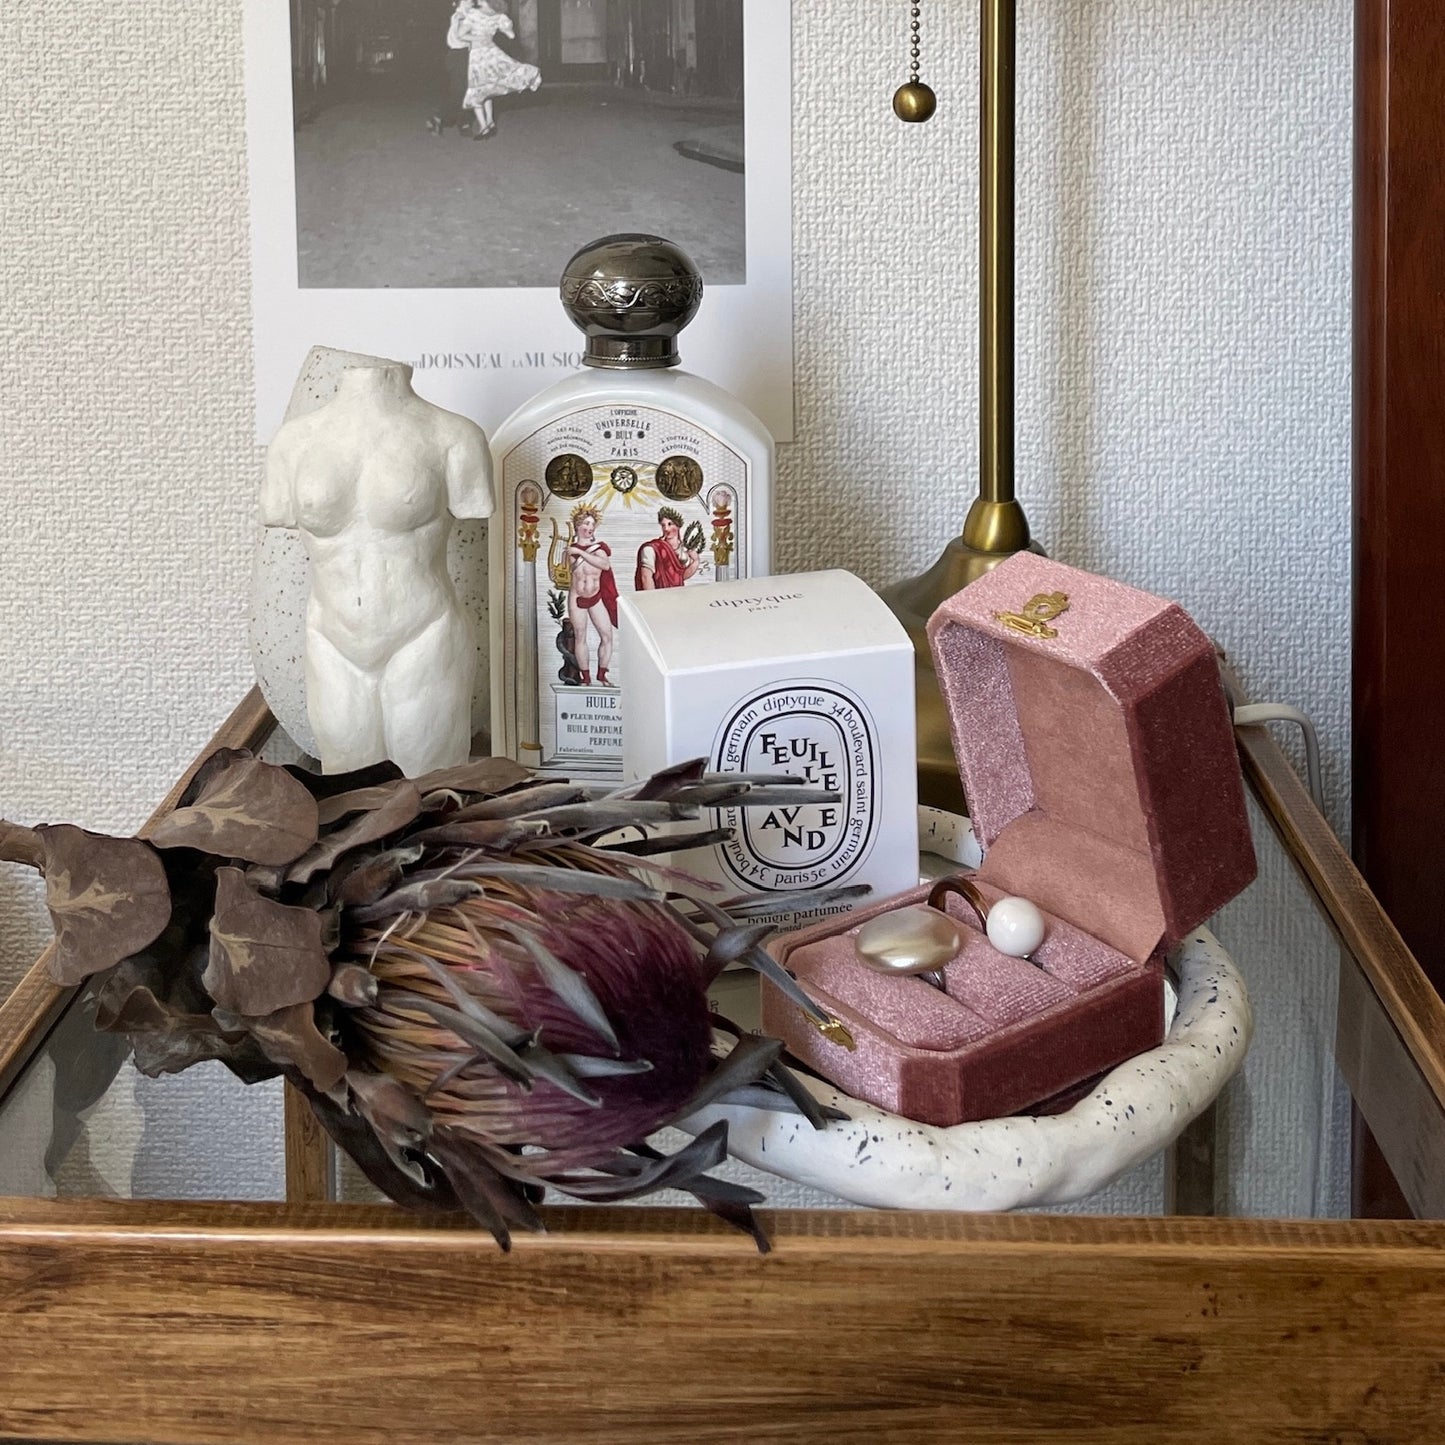 [ rose wood ] velvet jewelry box